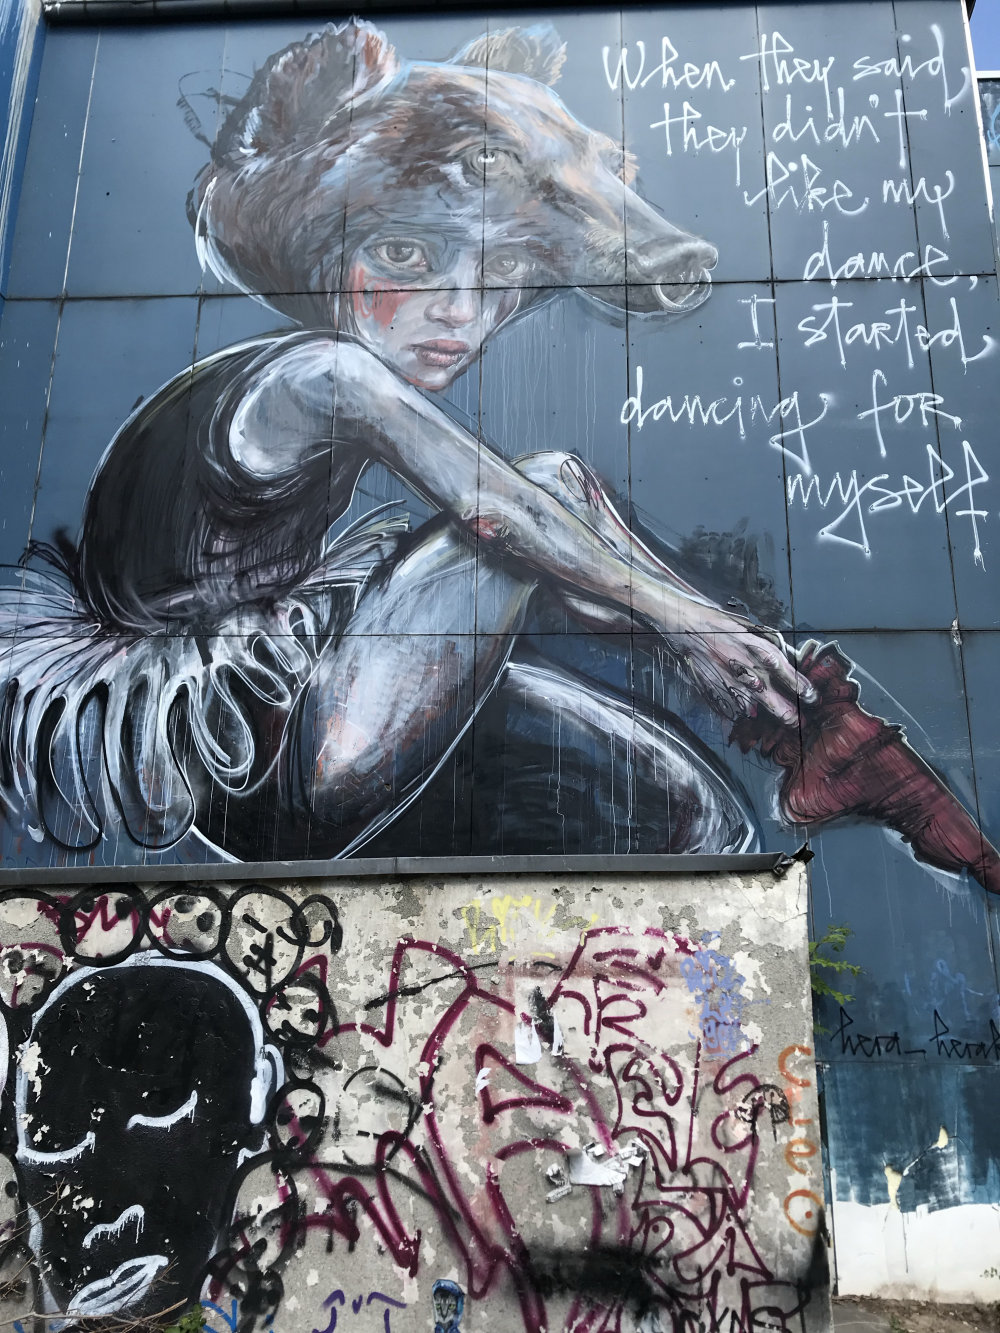 mural in Berlin by artist Herakut.